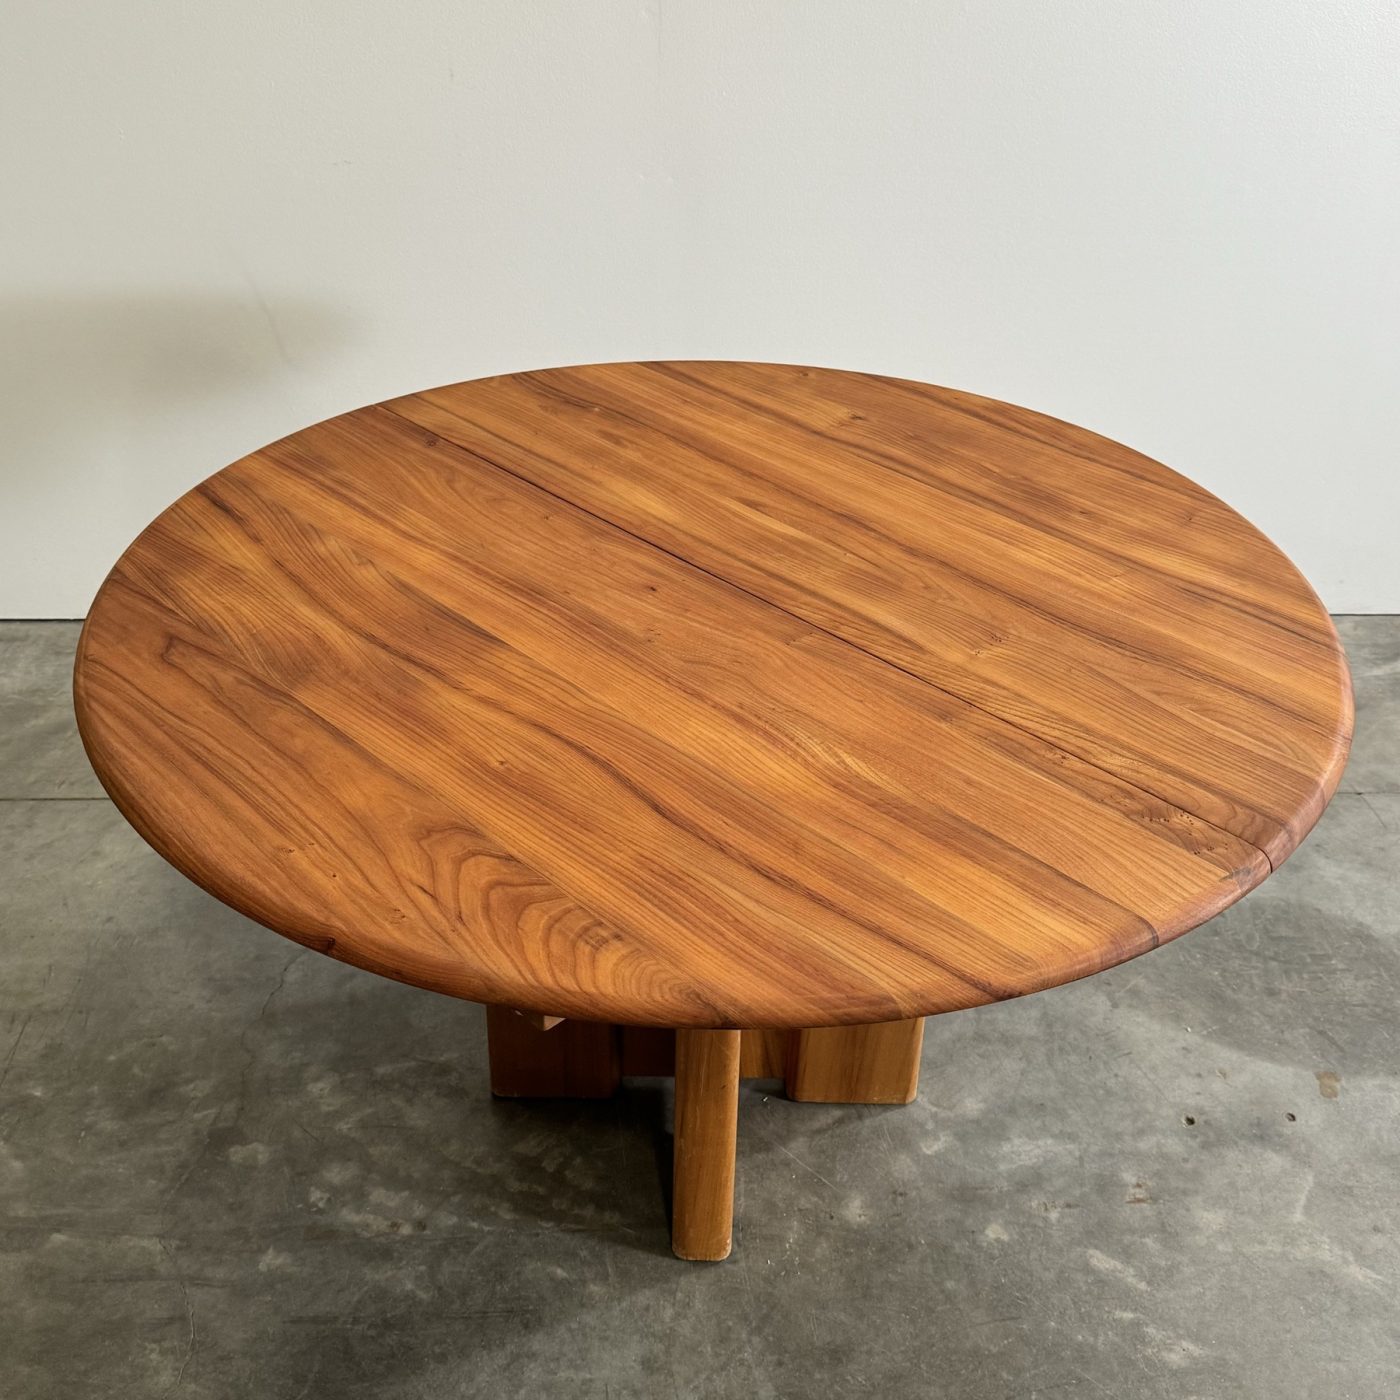 objet-vagabond-elm-table0005